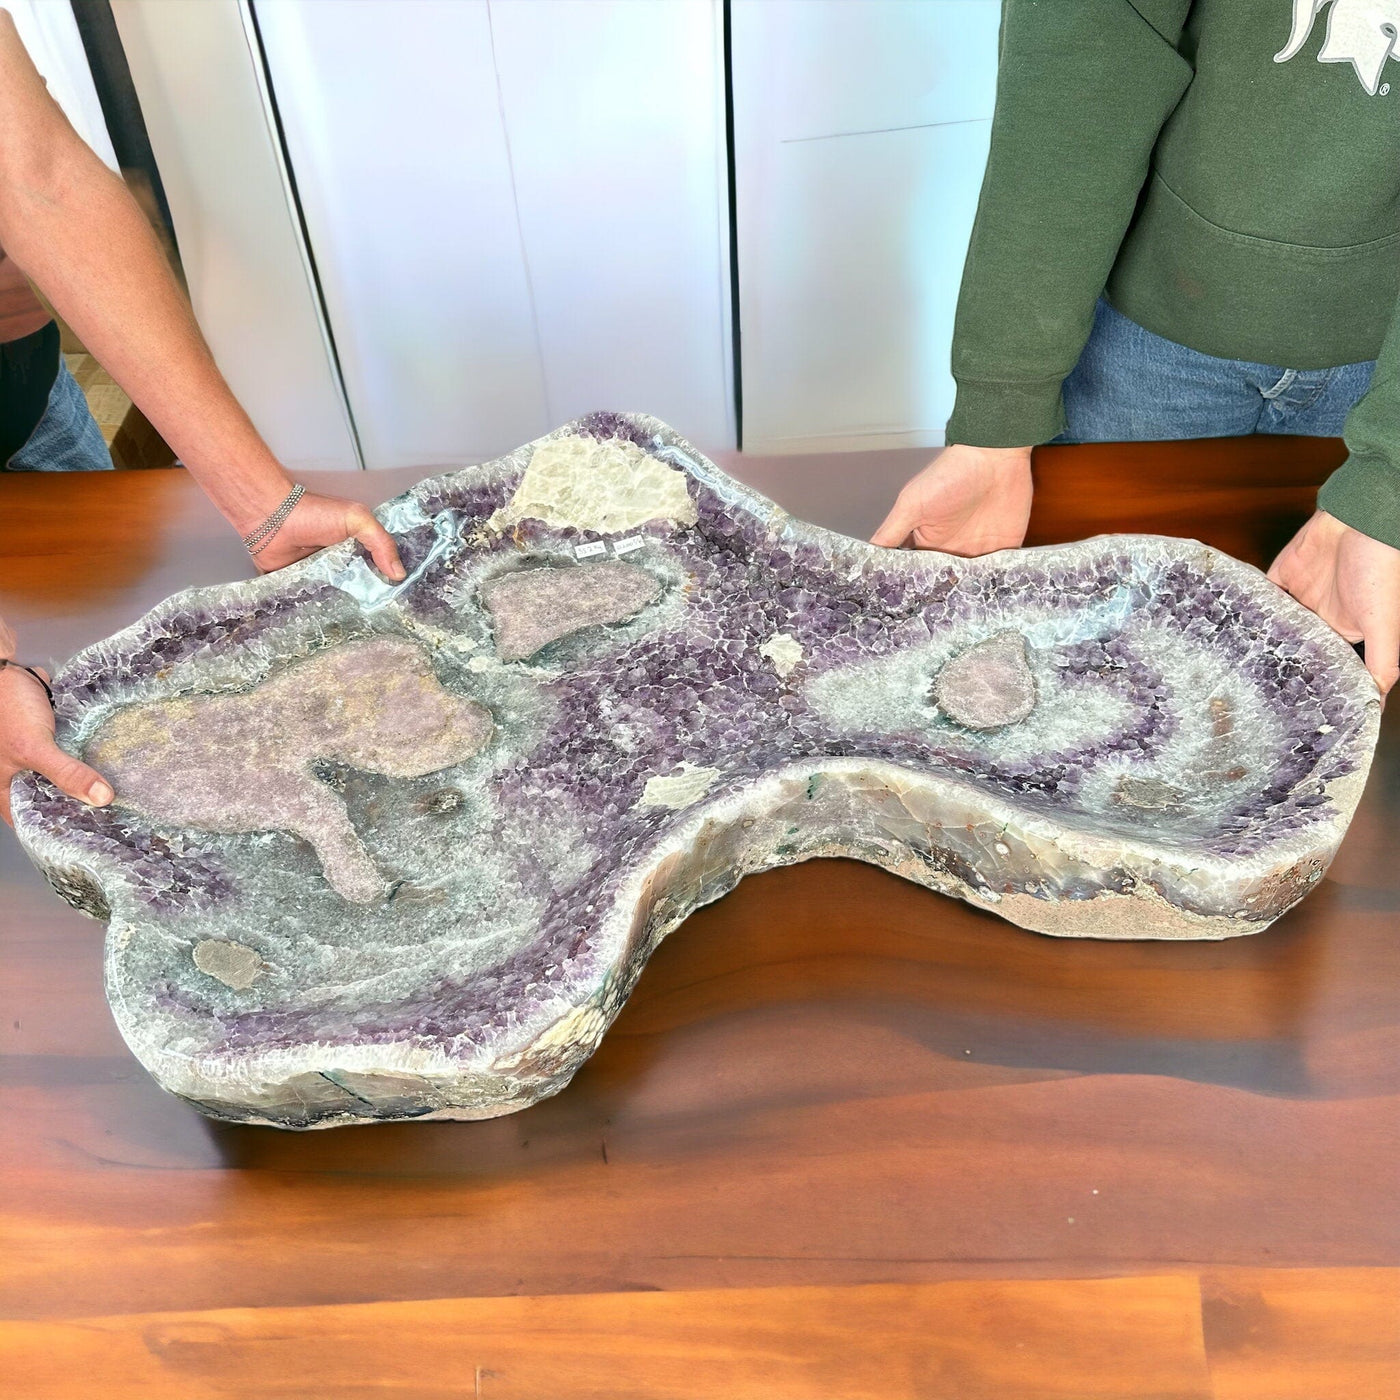 Amethyst Crystal Freeform Shaped Bowl - Super Large Amazing Stone Dish